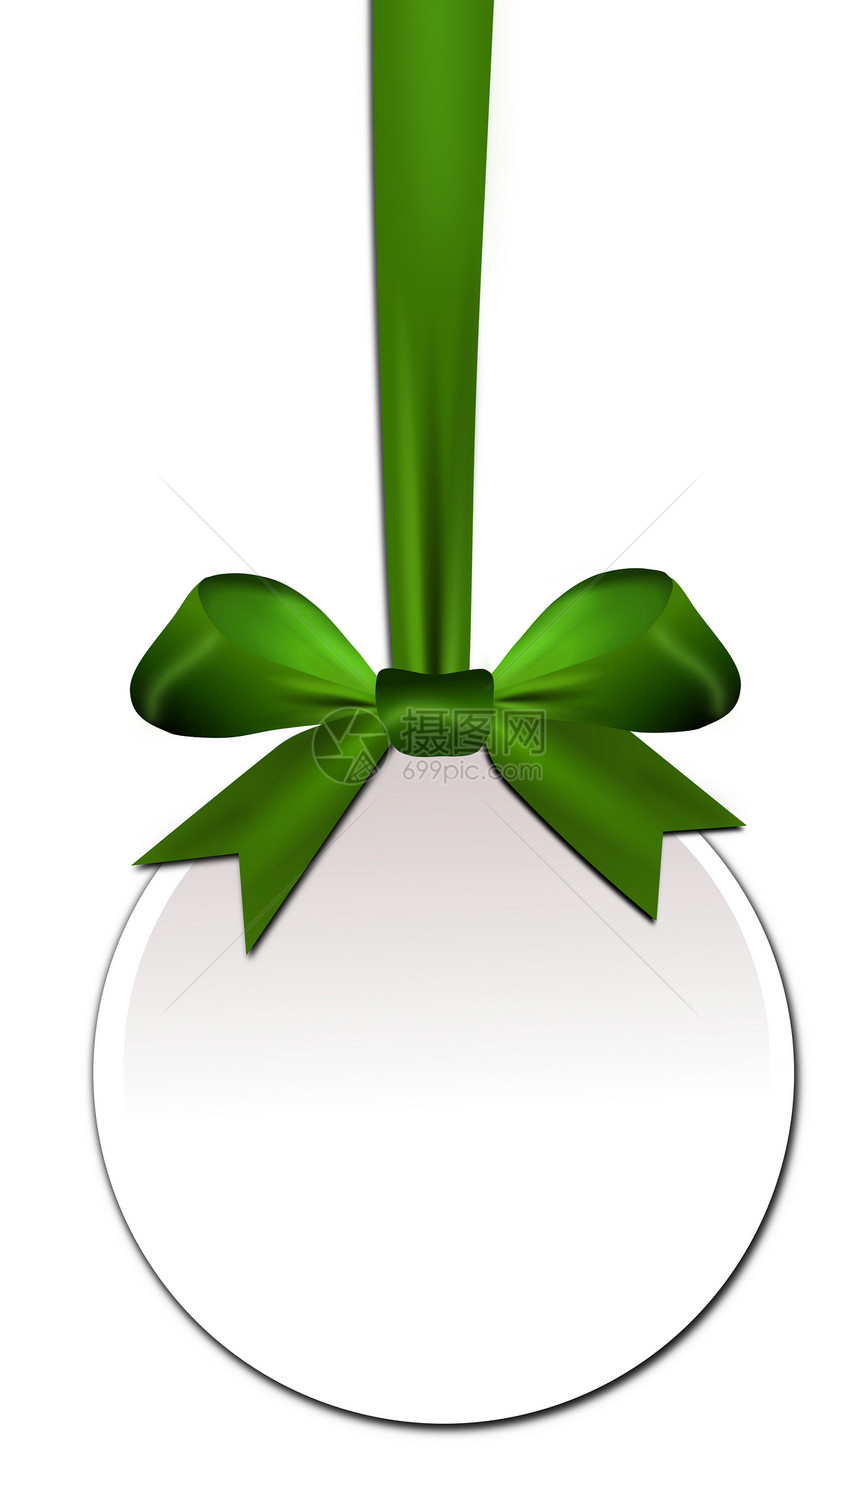 以绿弓为装饰的圆环设计贺卡圣诞礼物条纹包装纽带风格婚礼派对元素图片